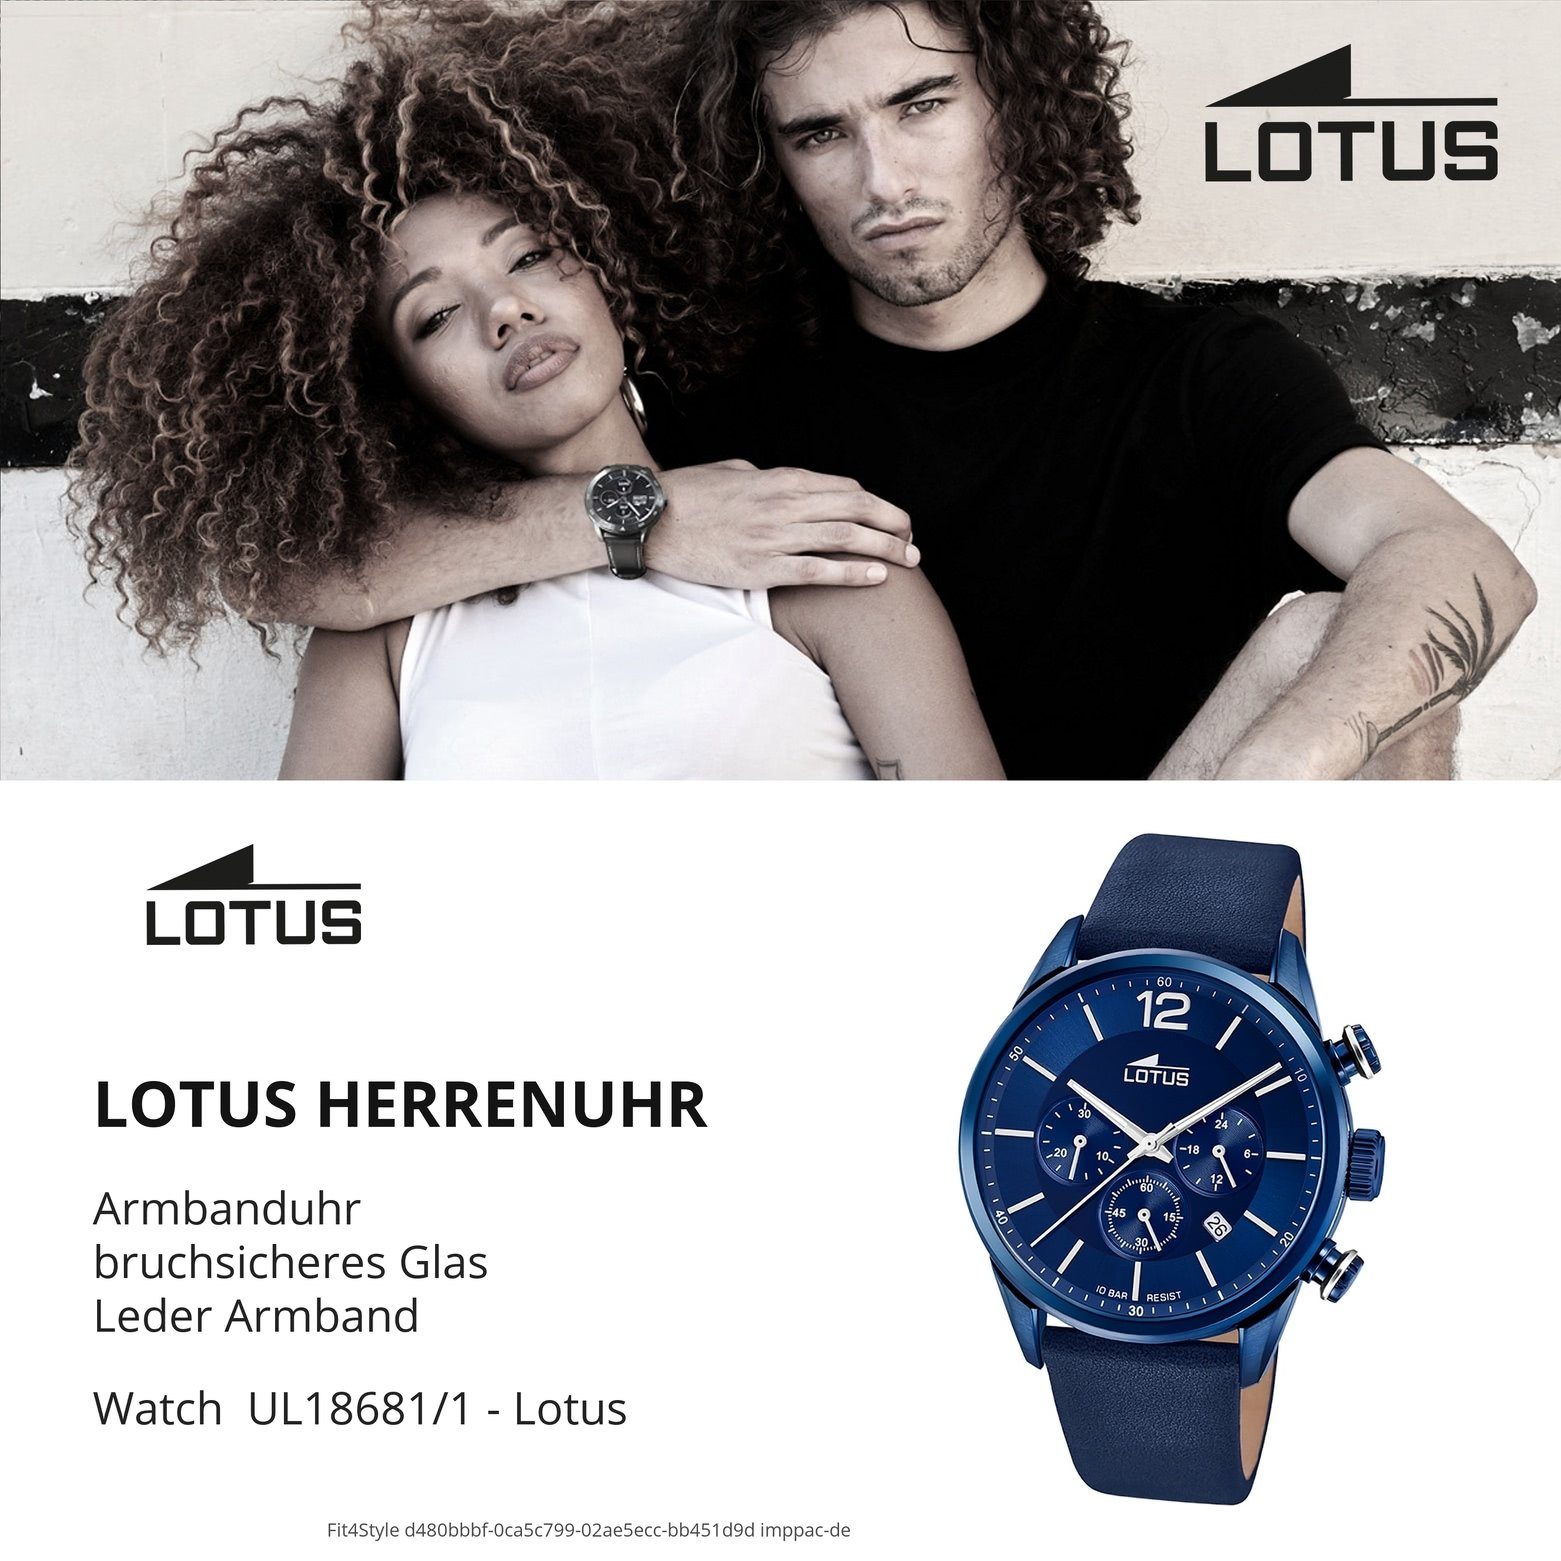 rund, Leder, Herren blau (ca. Lotus Uhr 18681/1 Quarzuhr Herrenuhr Sport groß Lederarmband 43mm) LOTUS